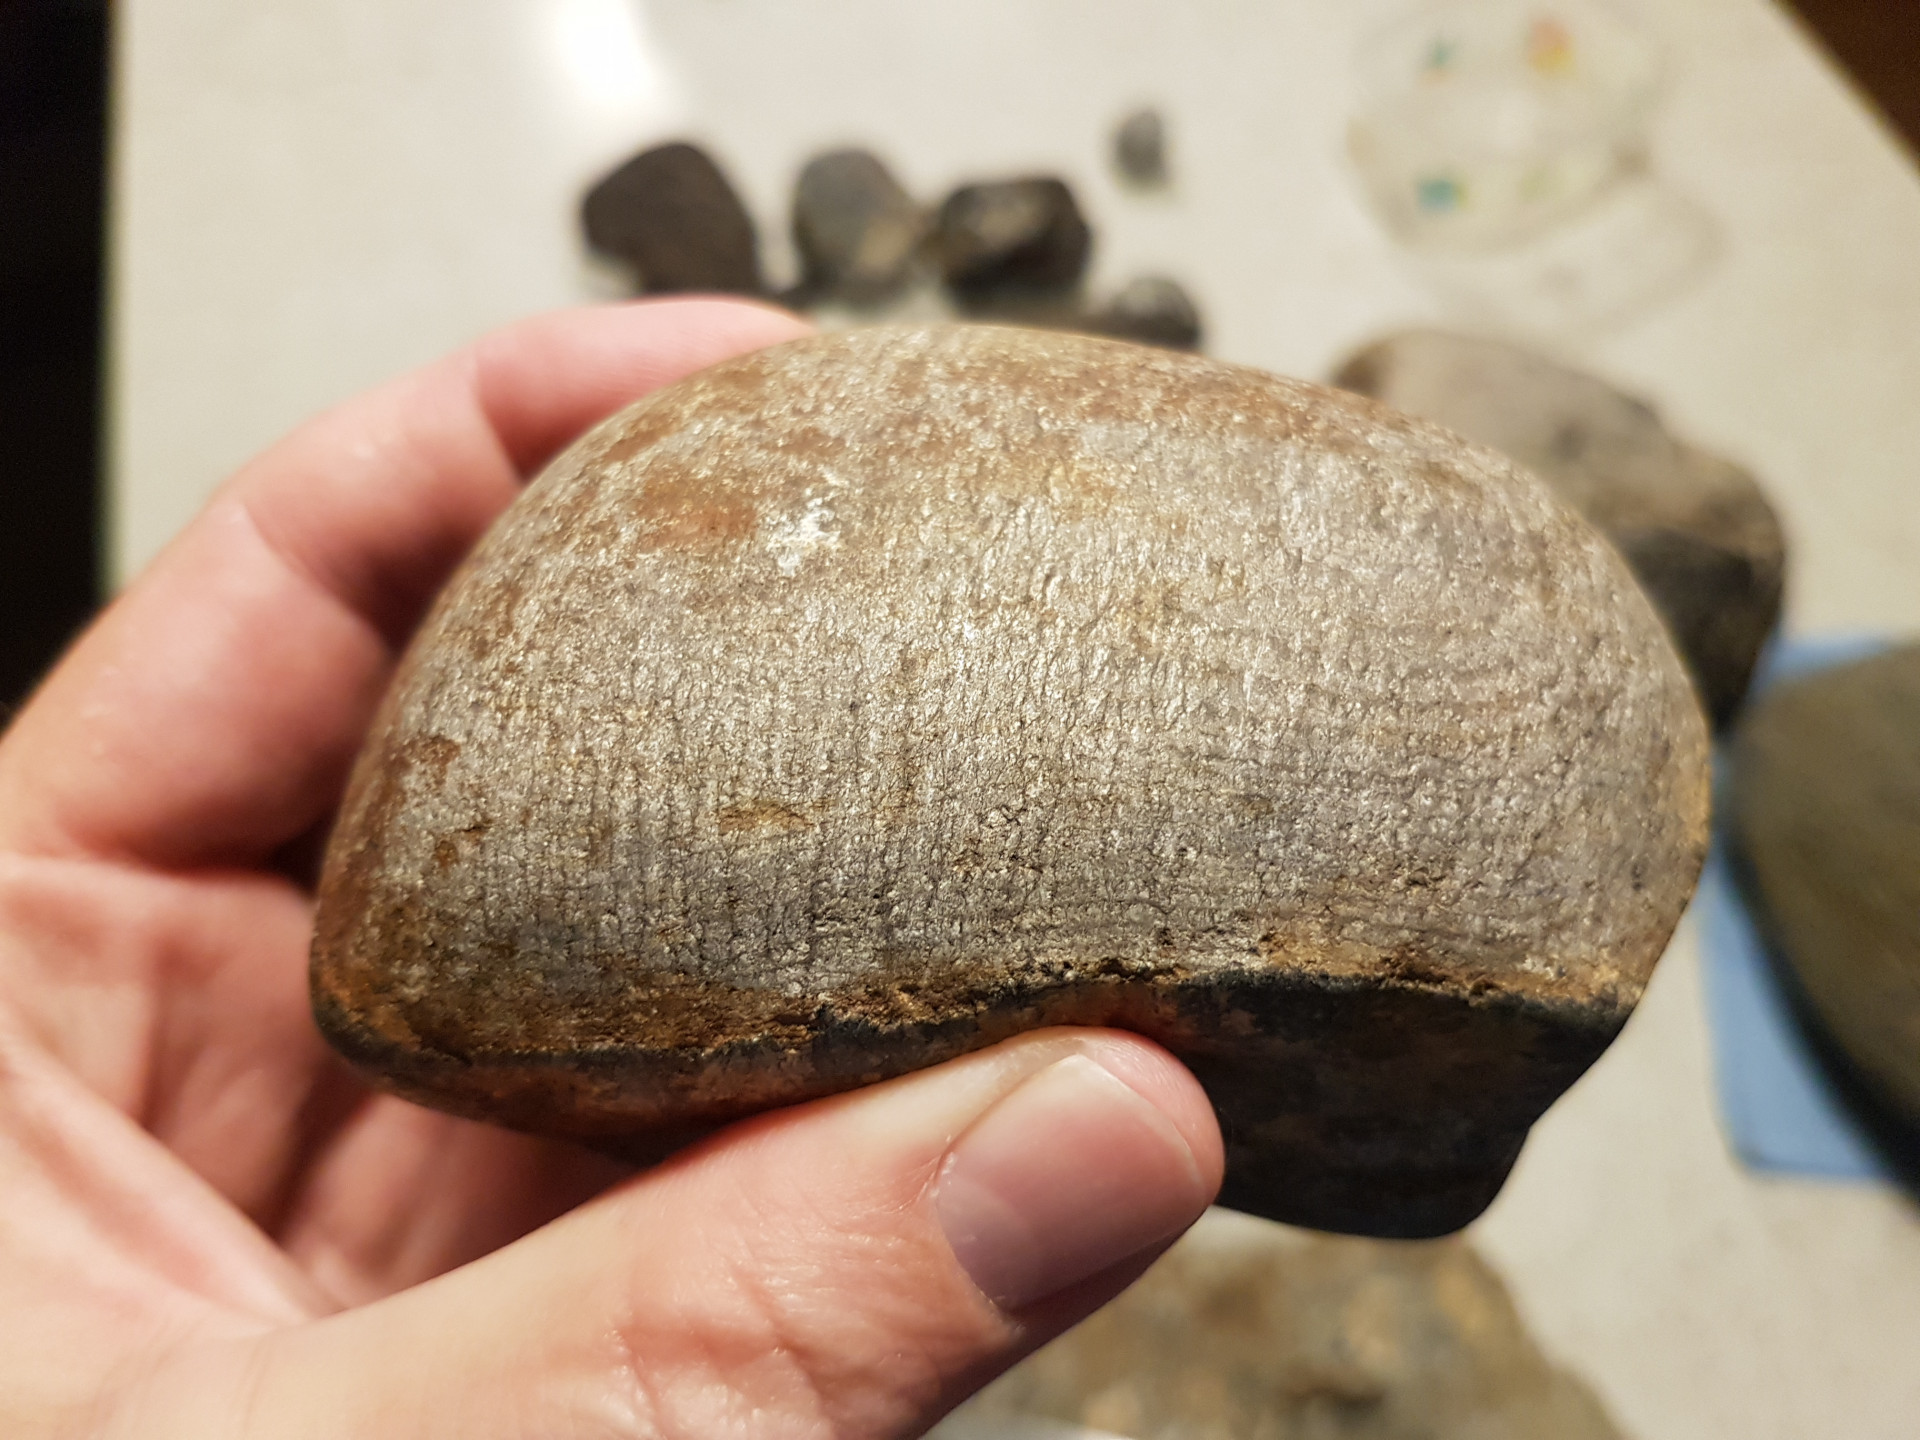 Suspected petrified wood (Cretaceous)